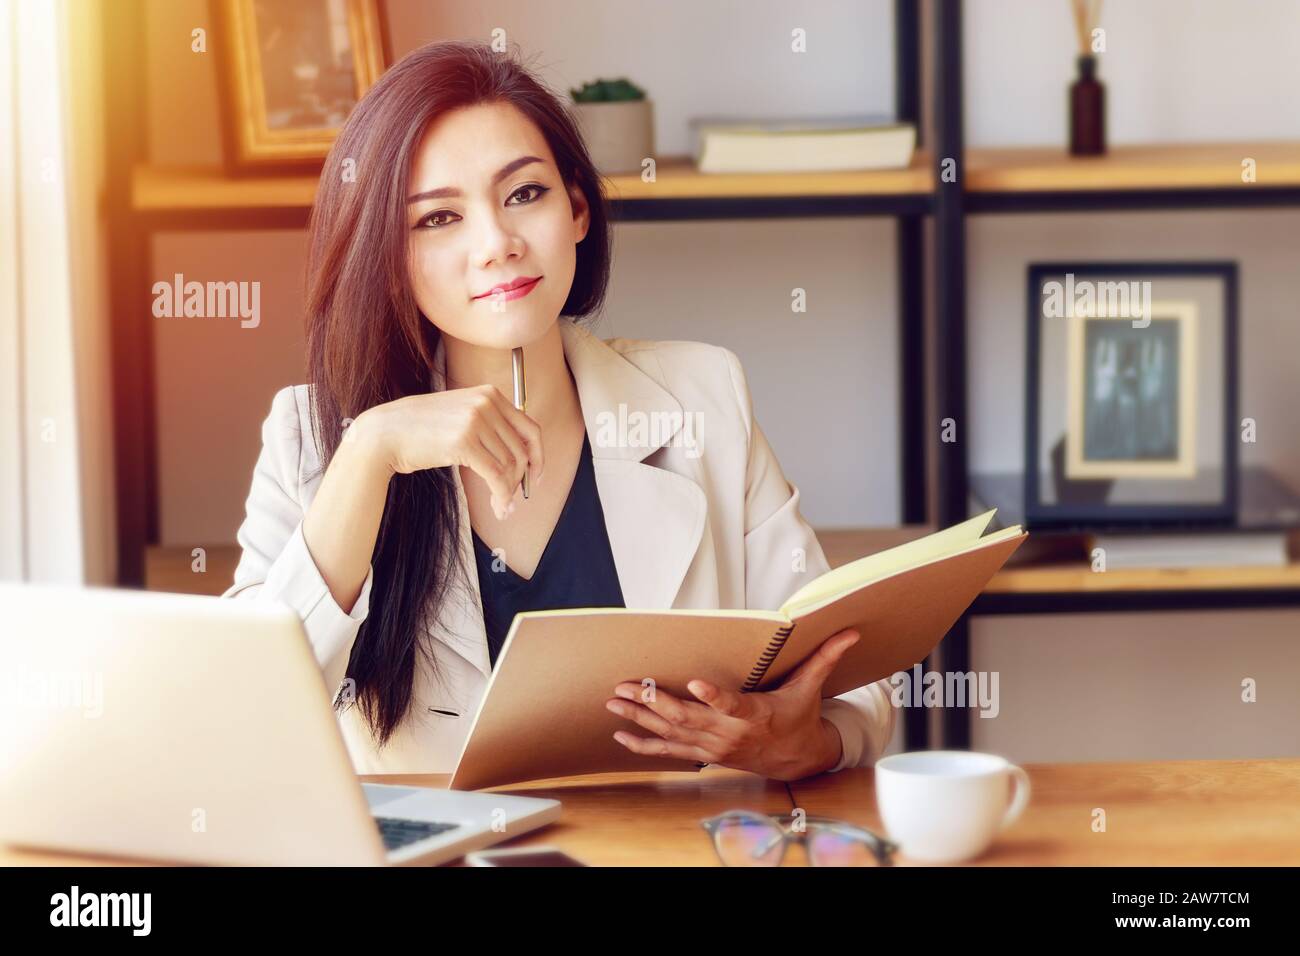 Ritratto di una donna asiatica d'affari bella e sicura nel lavorare con notebook e libro gestire lavoro sul posto di lavoro, guardare la fotocamera e smi Foto Stock